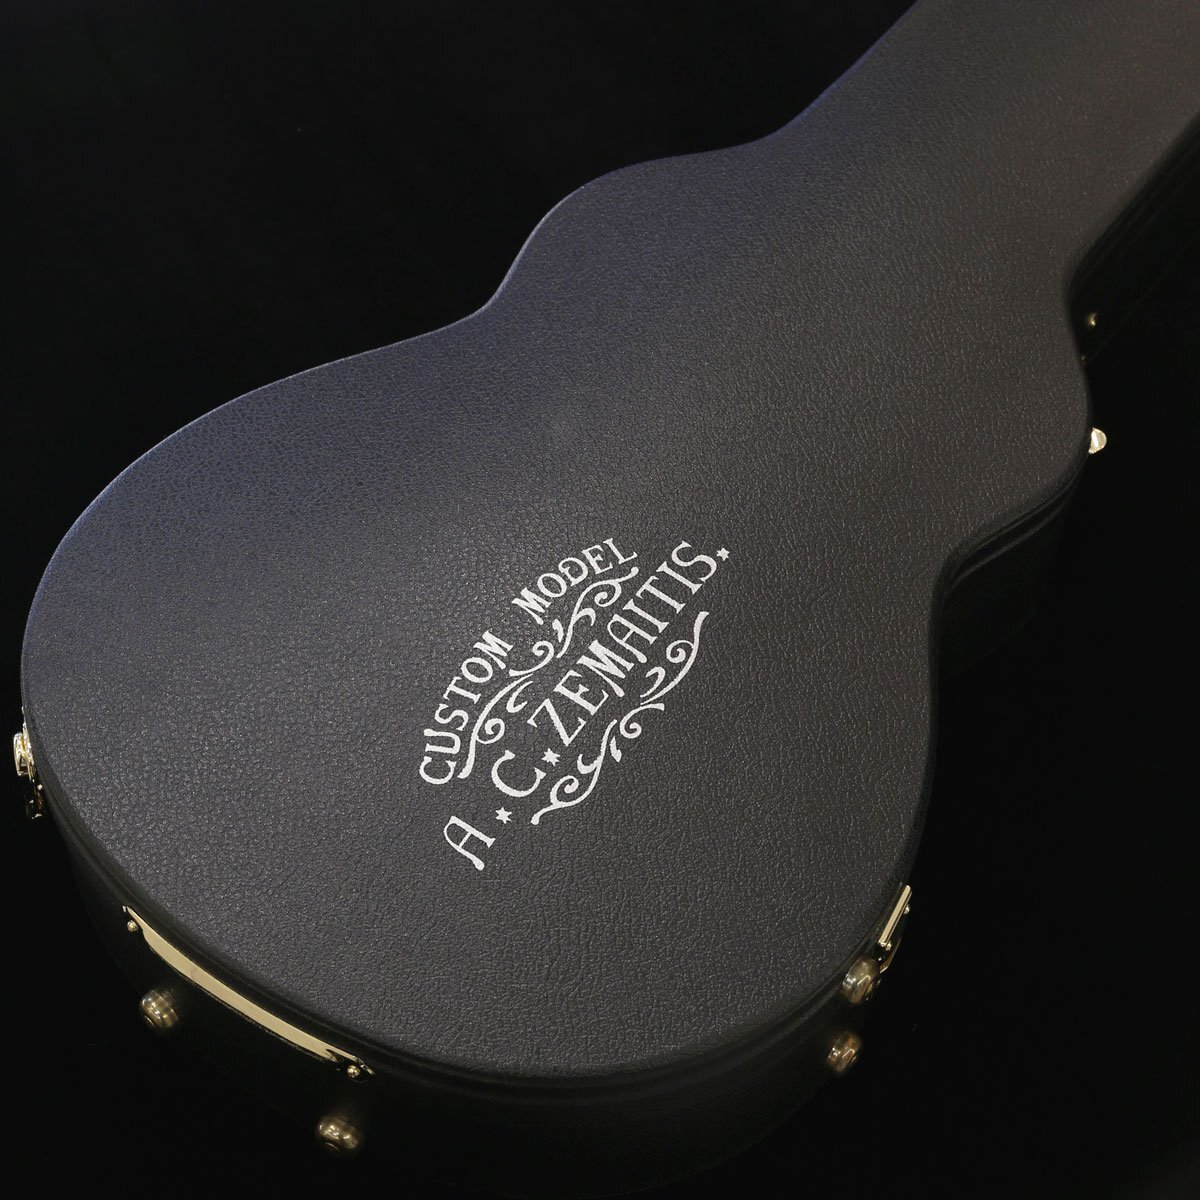 送料無料 新品 Zemaitis ゼマイティス エレキギター THE PORTRAIT Pearl Front Ultimate White 3S 国産 日本国内限定発売 検品調整済出荷_画像10